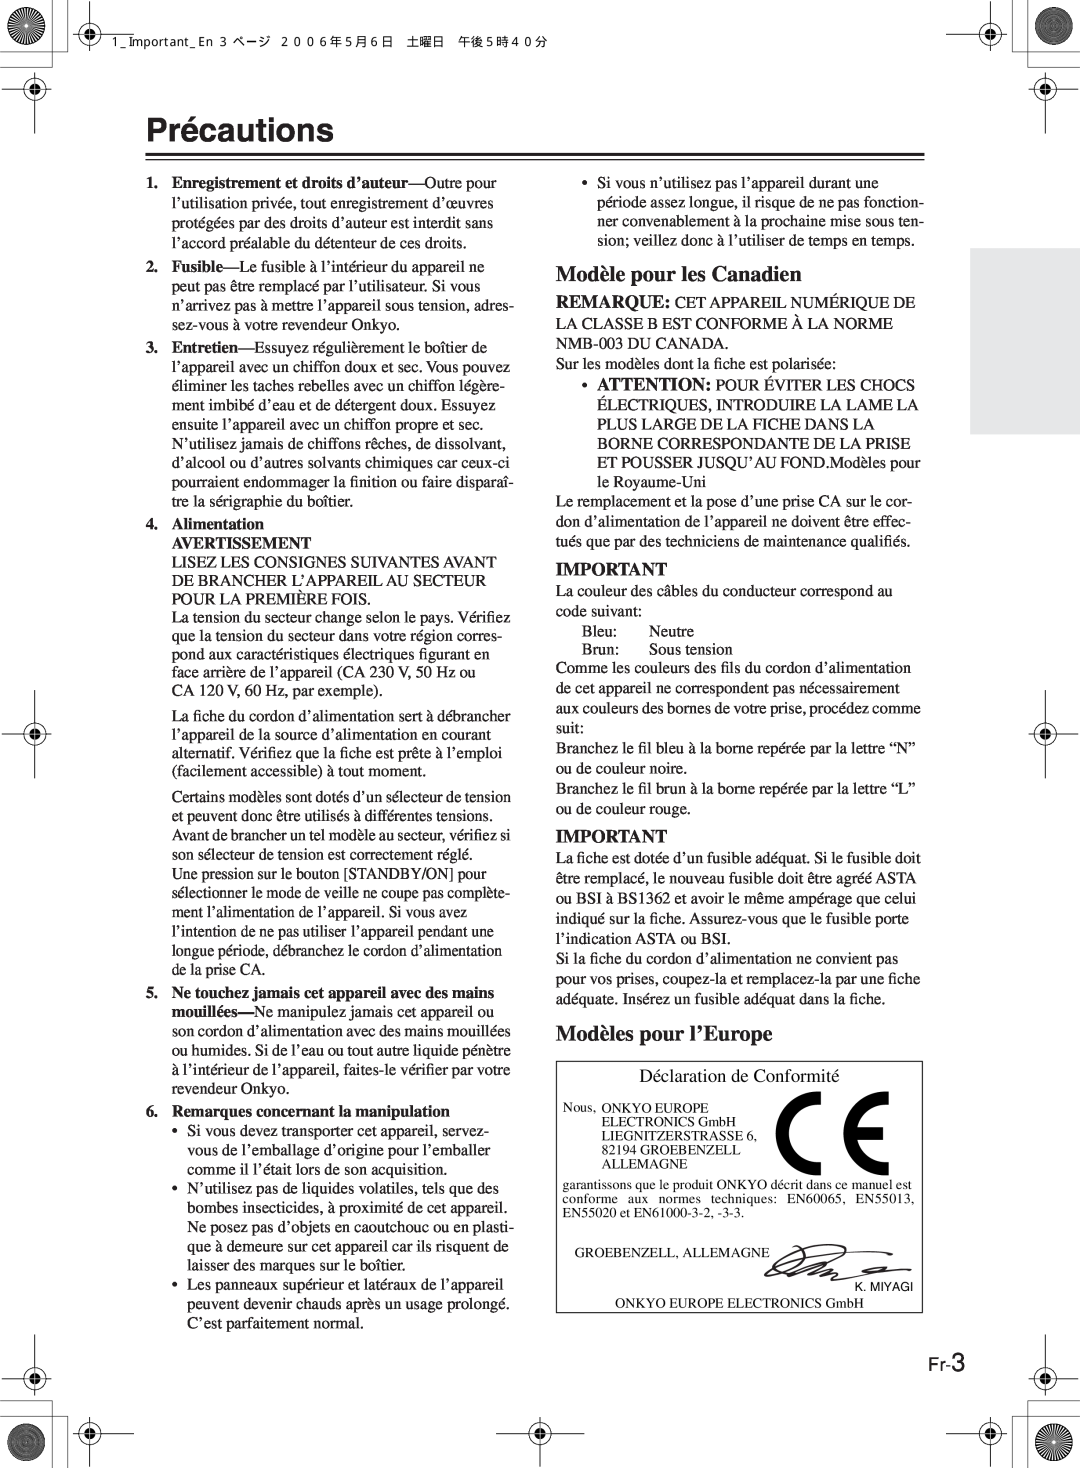 Onkyo TX-8522, TX-8222 manual Précautions, Modèle pour les Canadien, Modèles pour l’Europe, Déclaration de Conformité, Fr-3 